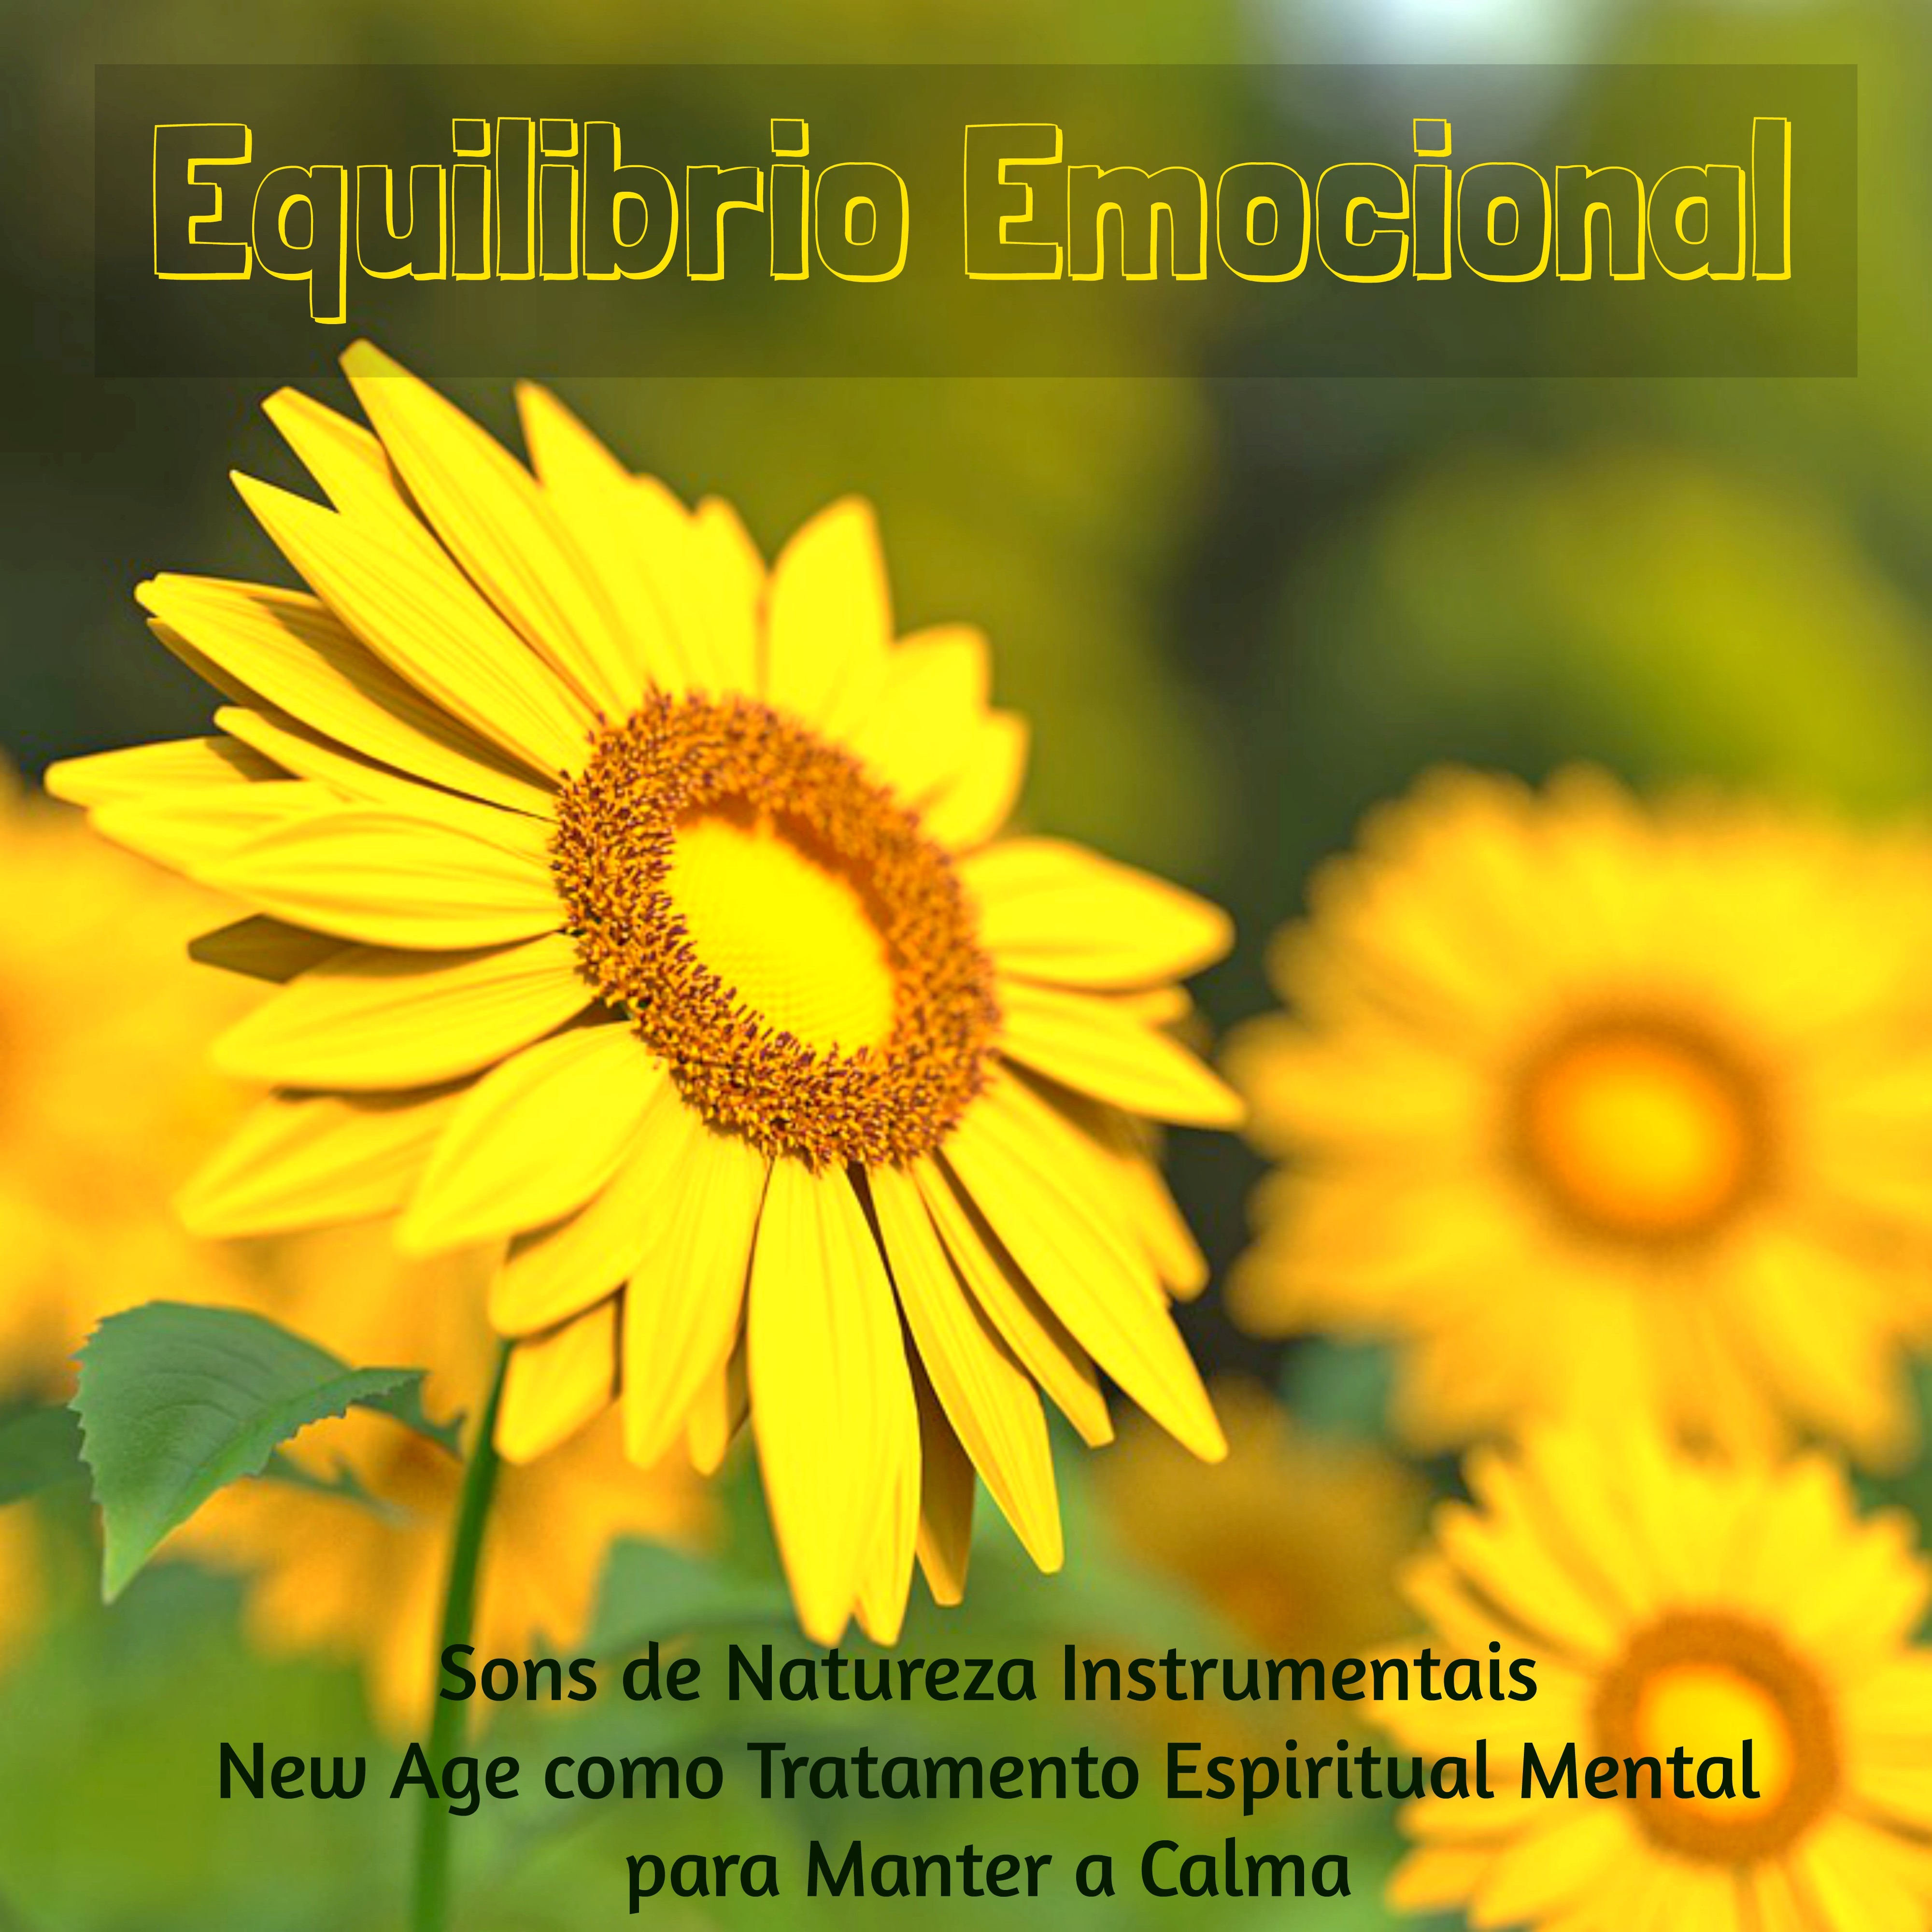 Equilibrio Emocional - Sons de Natureza Instrumentais New Age como Tratamento Espiritual Mental para Manter a Calma, Musicas Relaxantes de Meditação